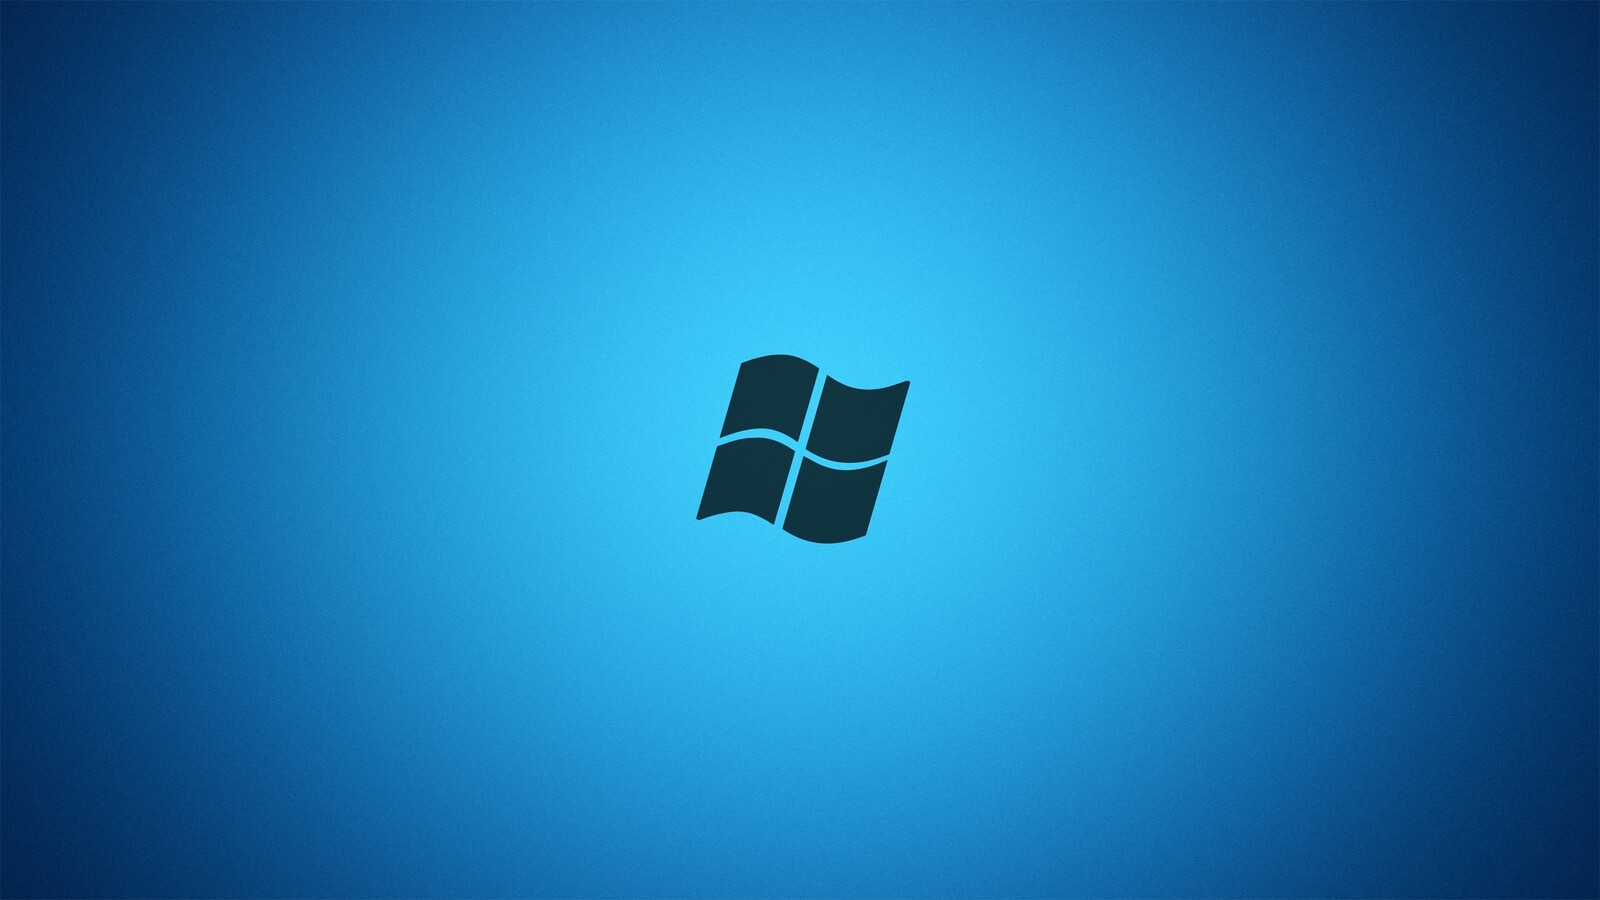 Cảm nhận thú vị với hình nền Windows 7 độc đáo, sắc nét và chuẩn đẹp. Hình nền này mang đến cho bạn cảm giác thư thái và dễ chịu khi sử dụng máy tính. Khám phá ngay hình nền tuyệt đẹp Windows 7 và tô điểm cho màn hình của bạn!